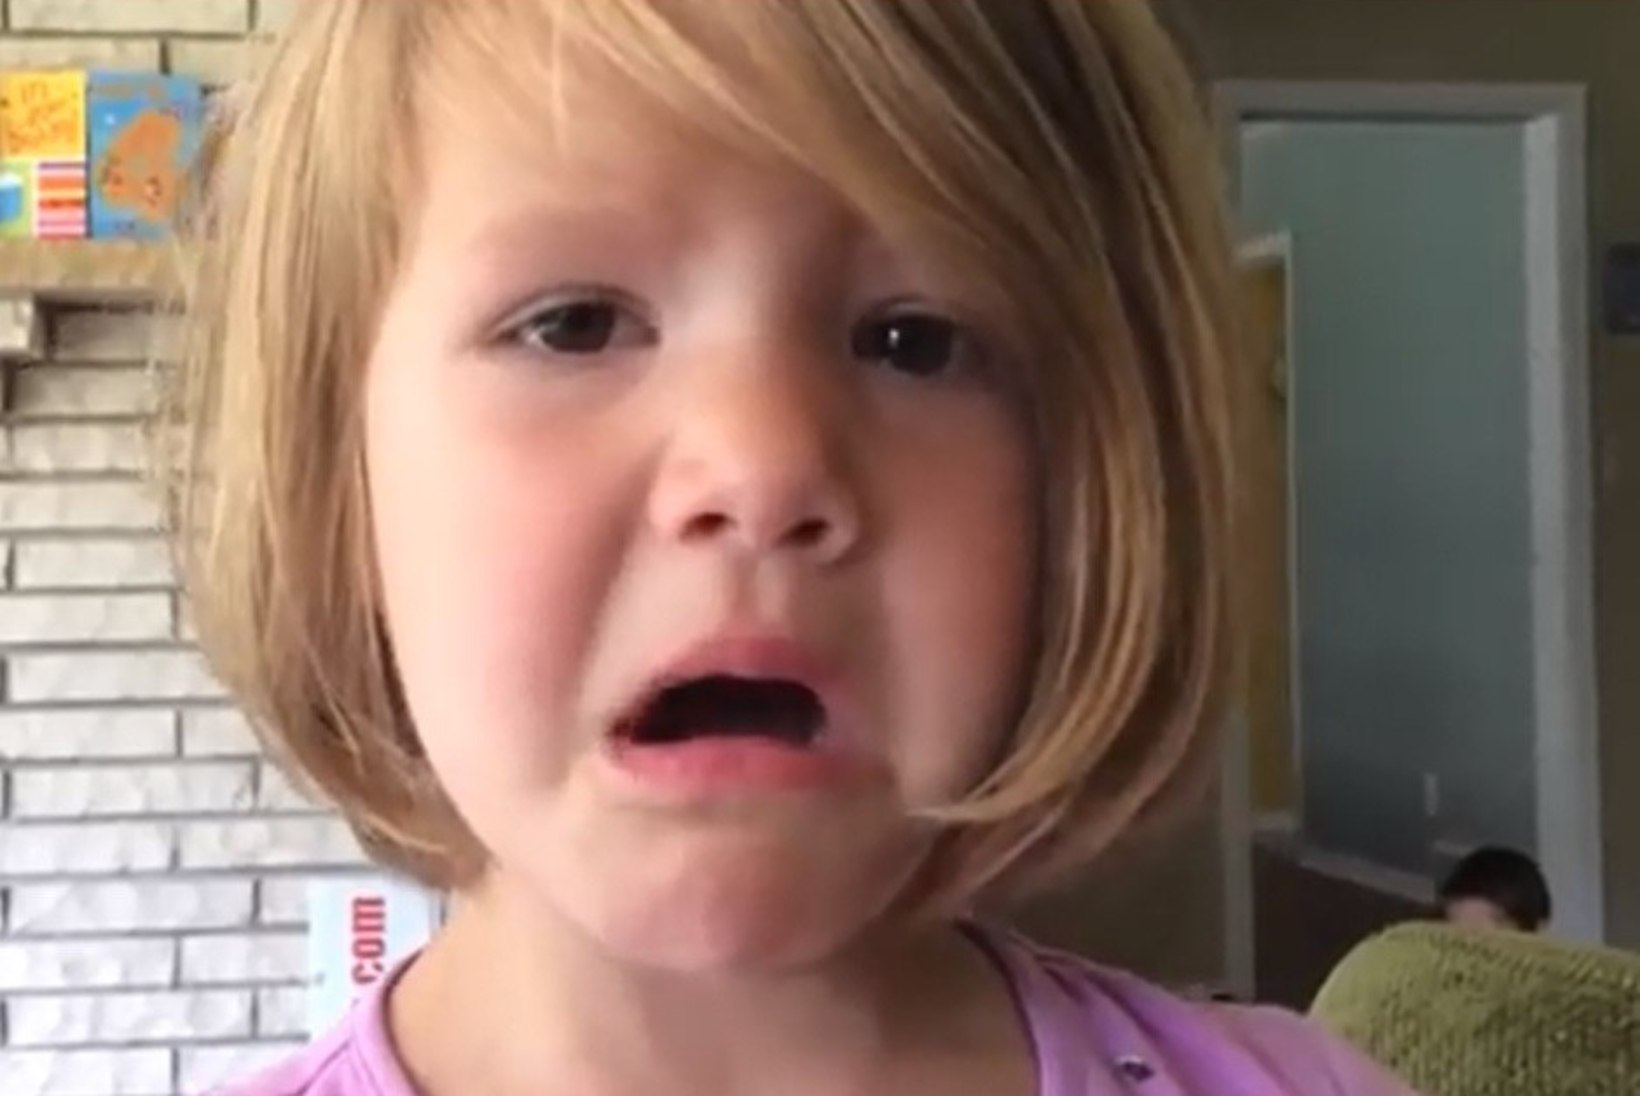 SÜDAMLIK VIDEO: 4aastane tüdruk mõistis, et kustutatud fotot ei saa enam mitte kunagi tagasi